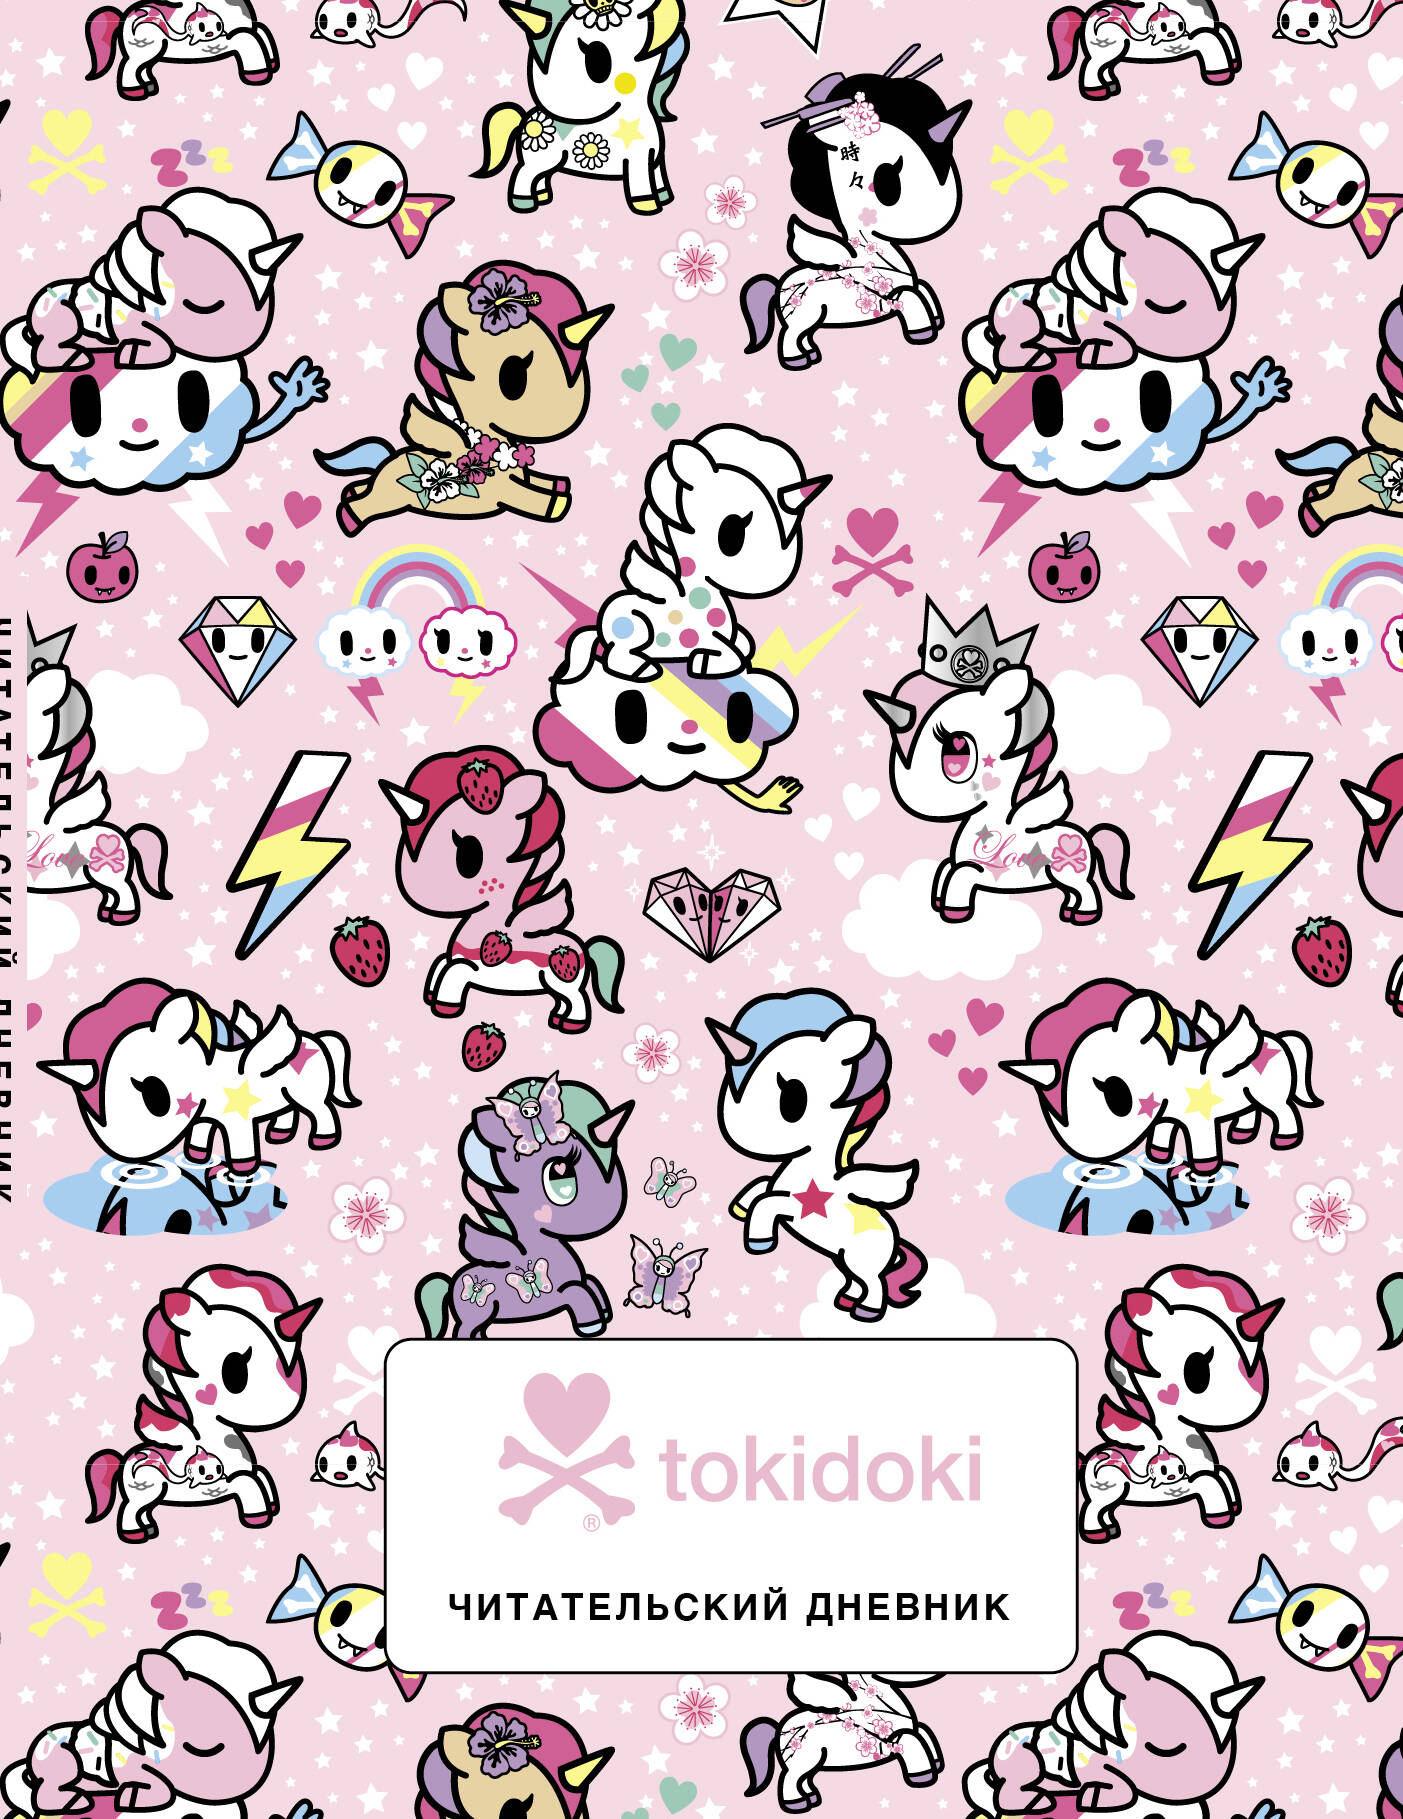 Читательский дневник. Вселенная tokidoki бомбора читательский дневник вселенная tokidoki розовый